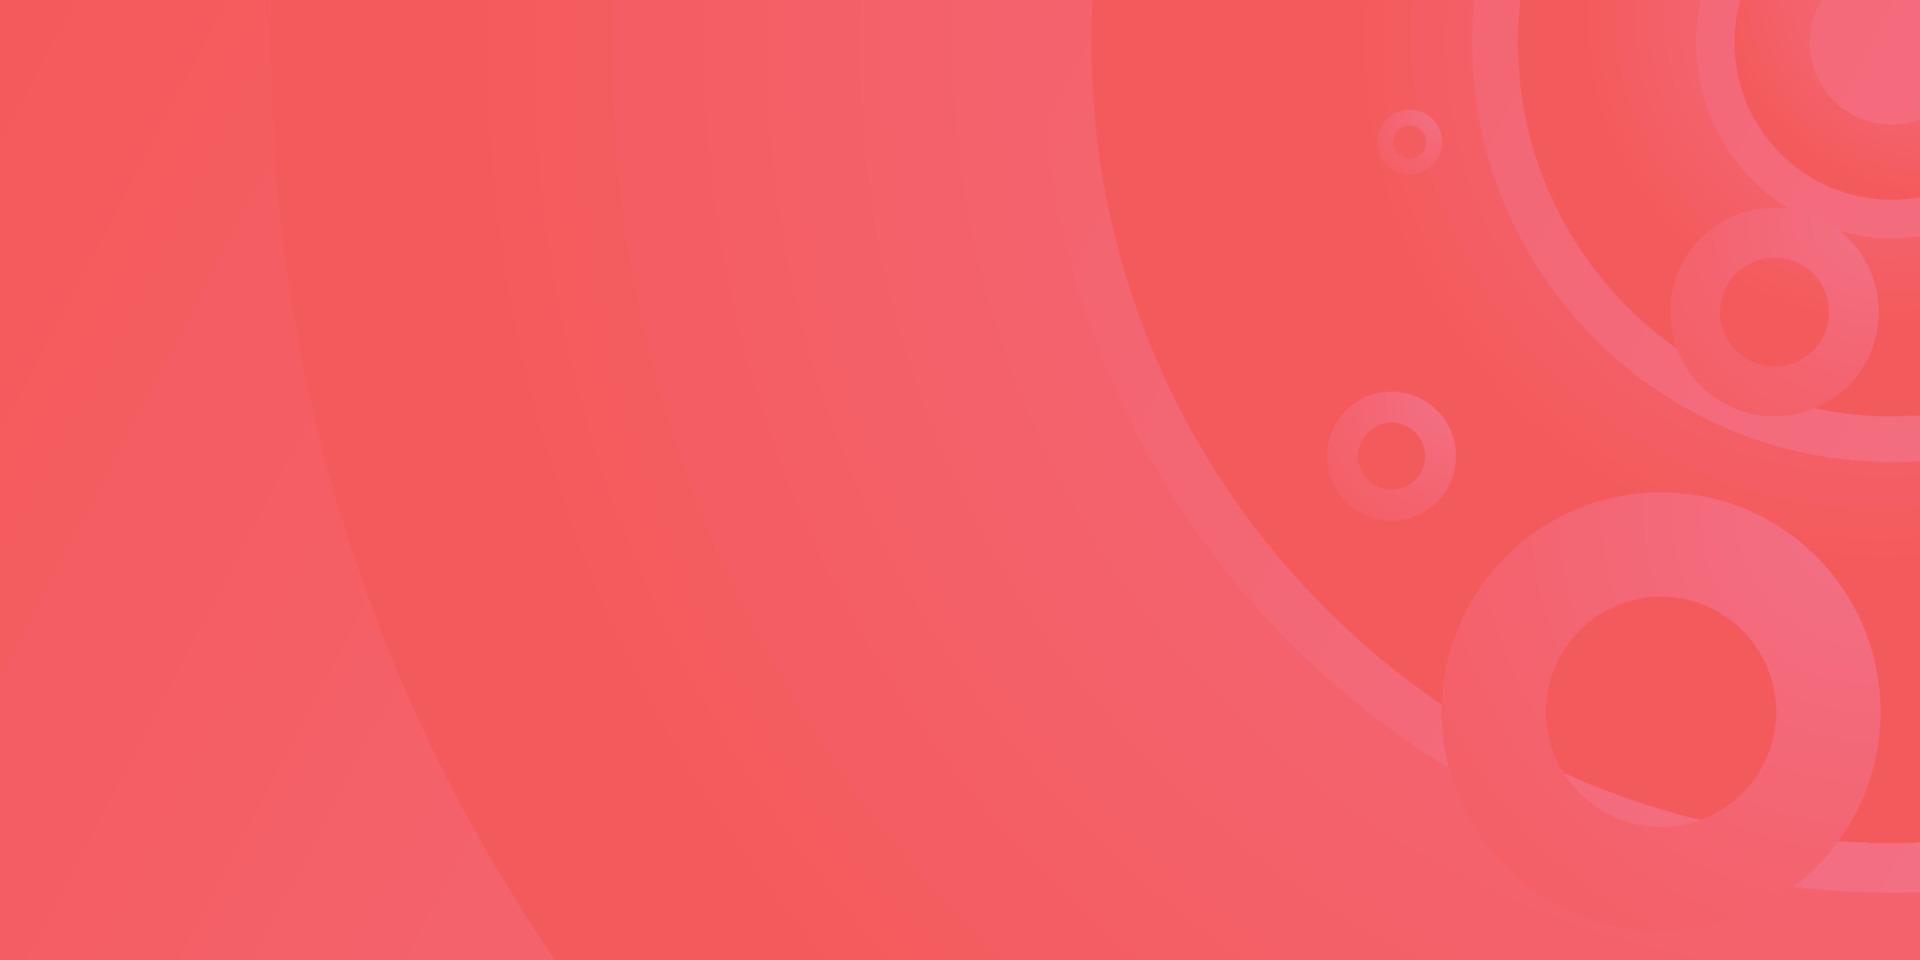 sfondo rosso moderno grafico vettoriale minimalista